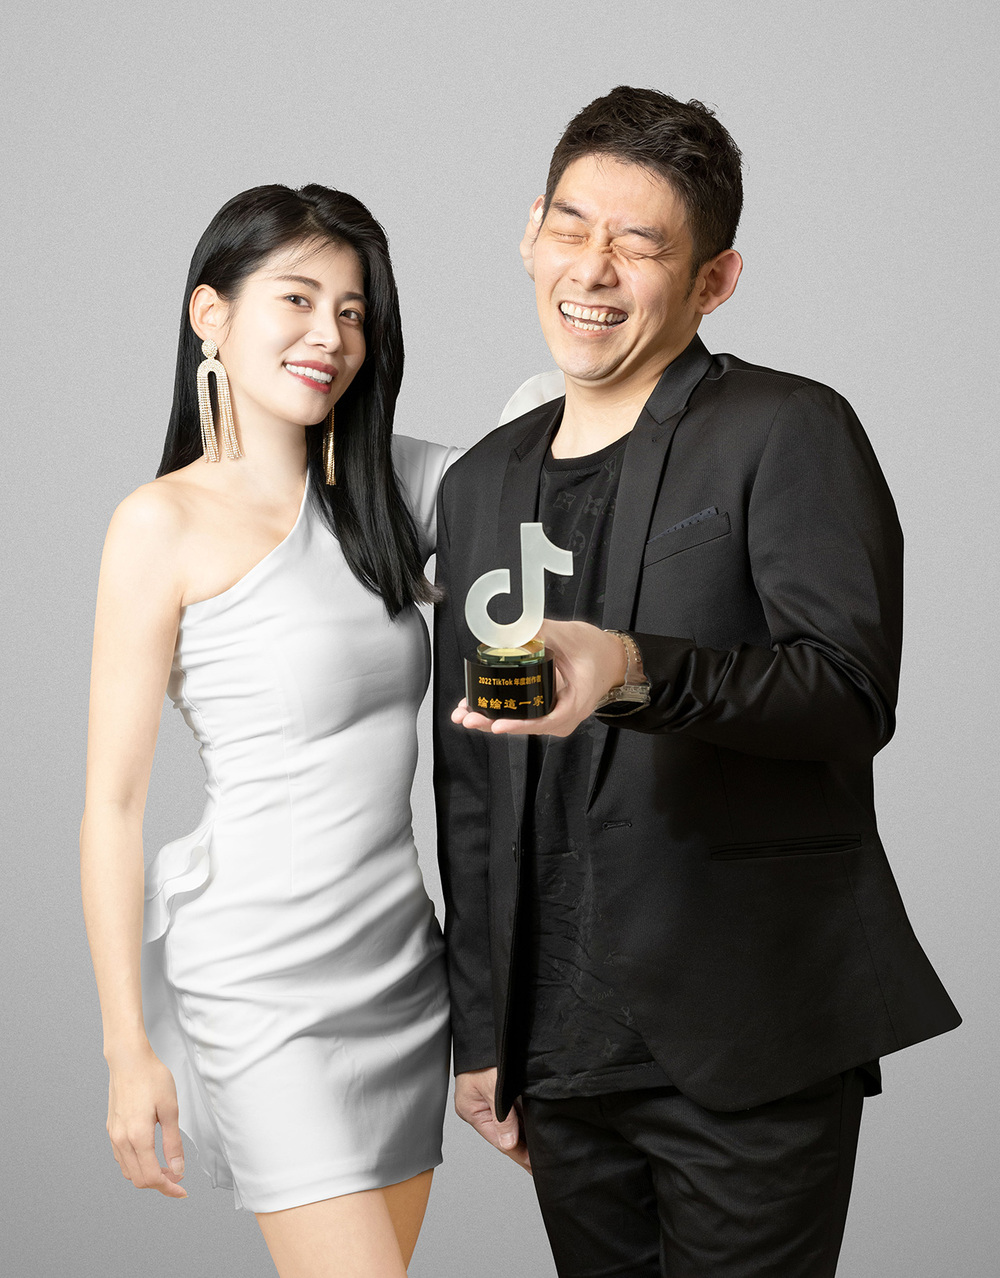 網紅與營養師首創產品與專人指導 贏得眾多好評 - 台北郵報 | The Taipei Post